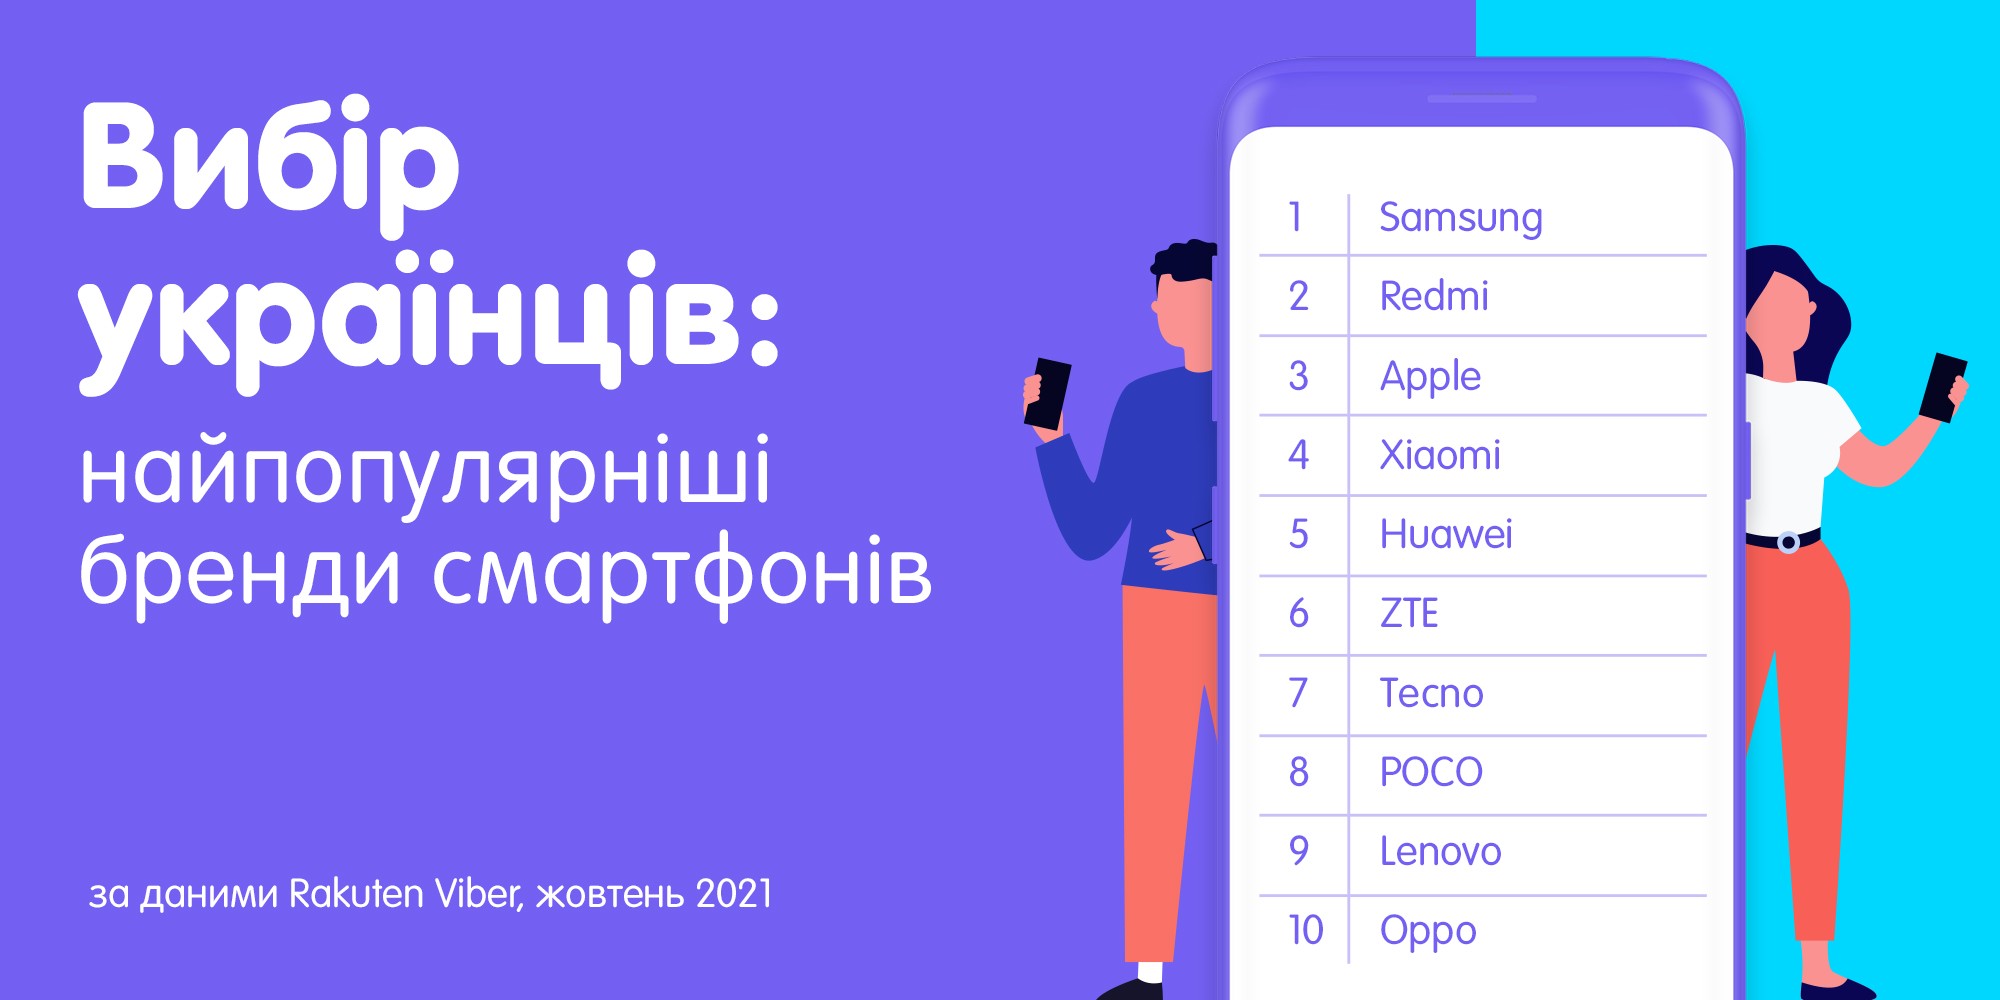 Дослідження: Найпопулярніші серед українців бренди та моделі смартфонів